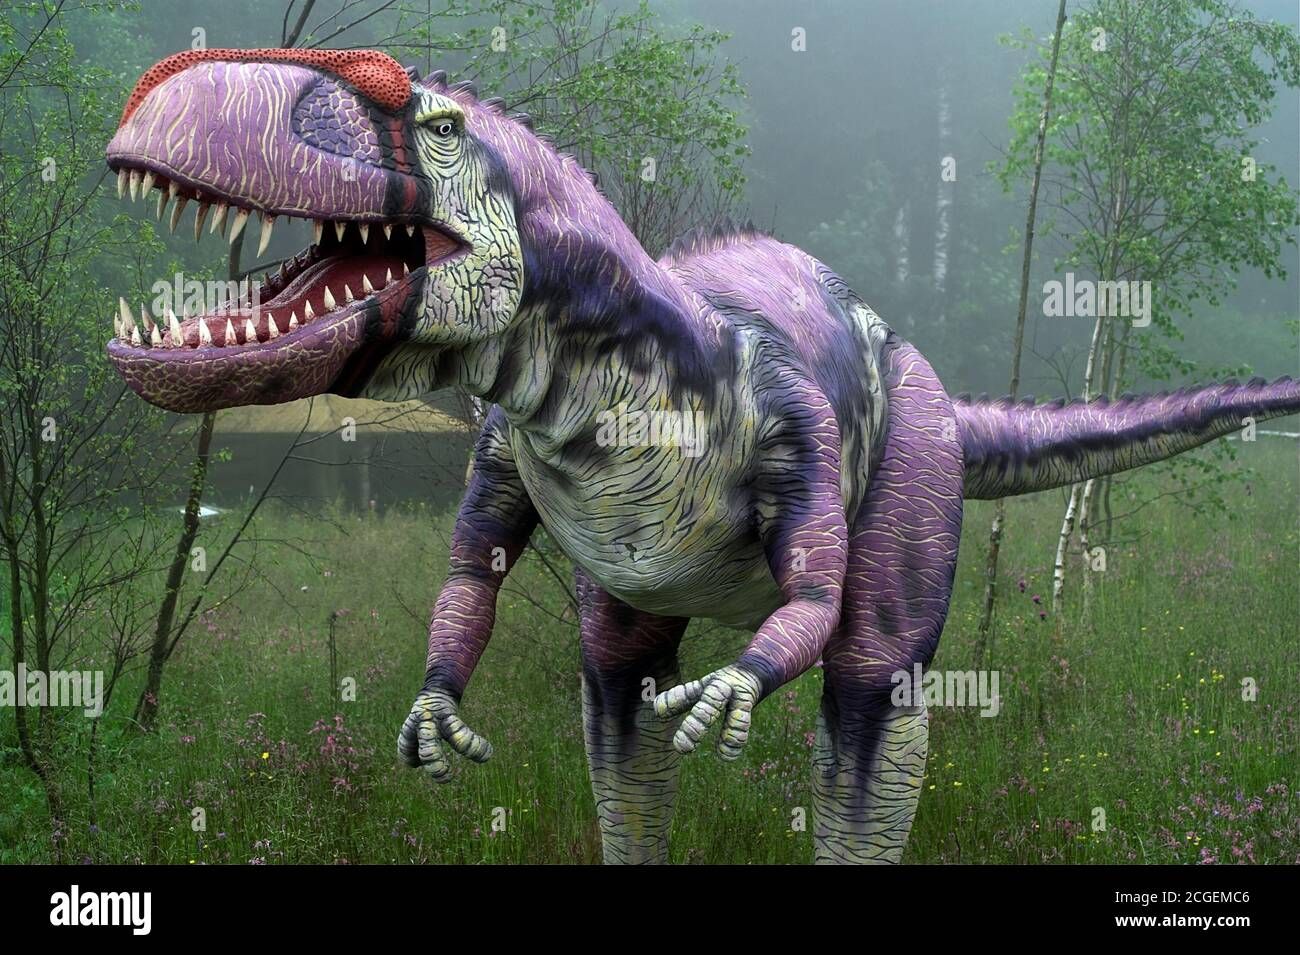 Descubierta una nueva especie de dinosaurio gigante en una remota isla deshabitada